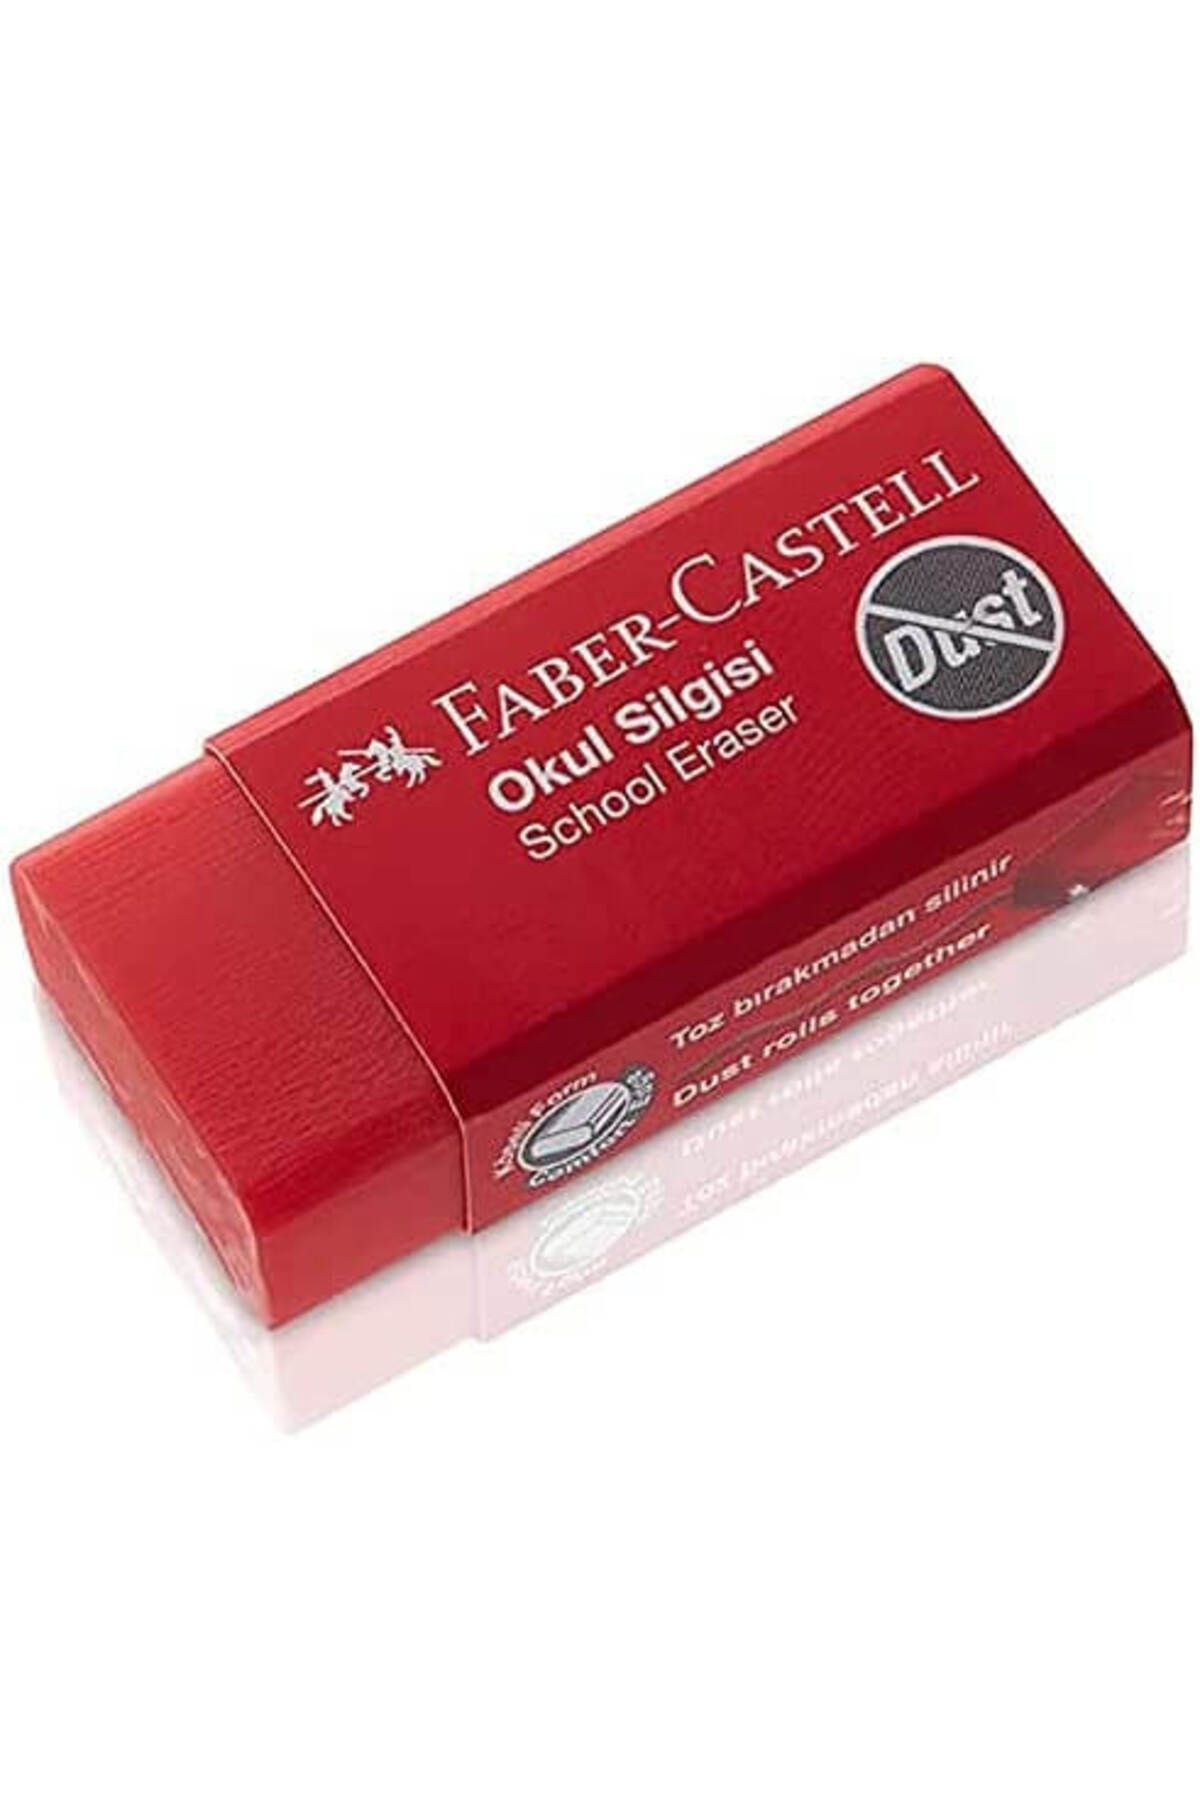 Faber Castell Dust Free Küçük Okul Silgisi Kırmızı / 187223